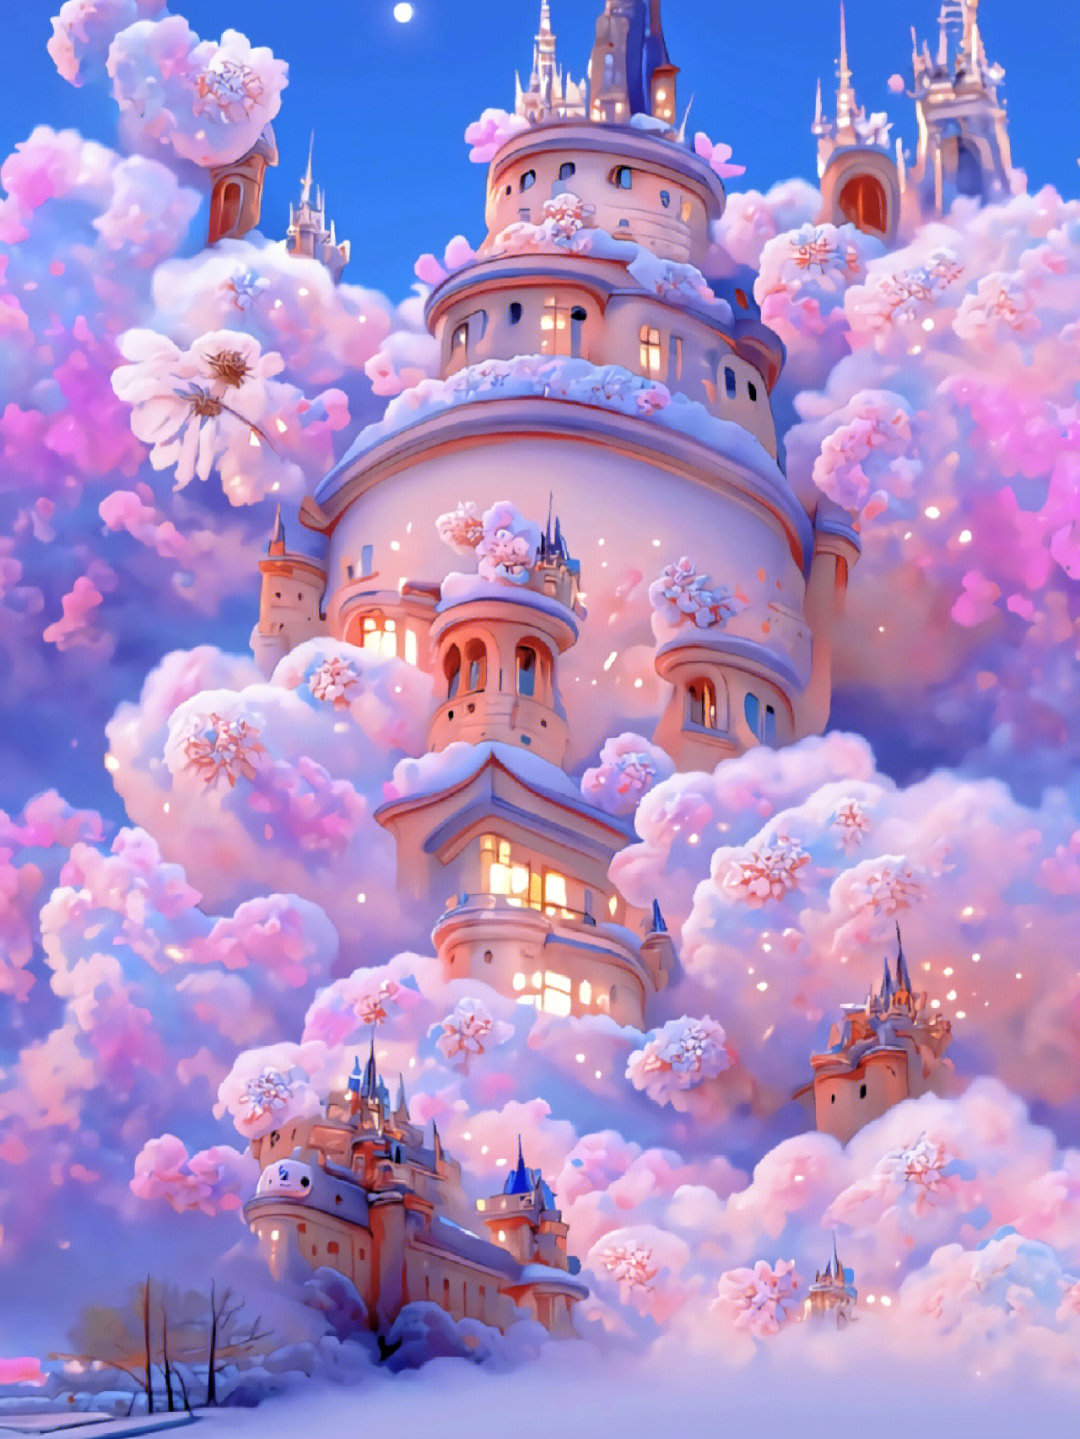 梦幻紫色城堡图片大全图片